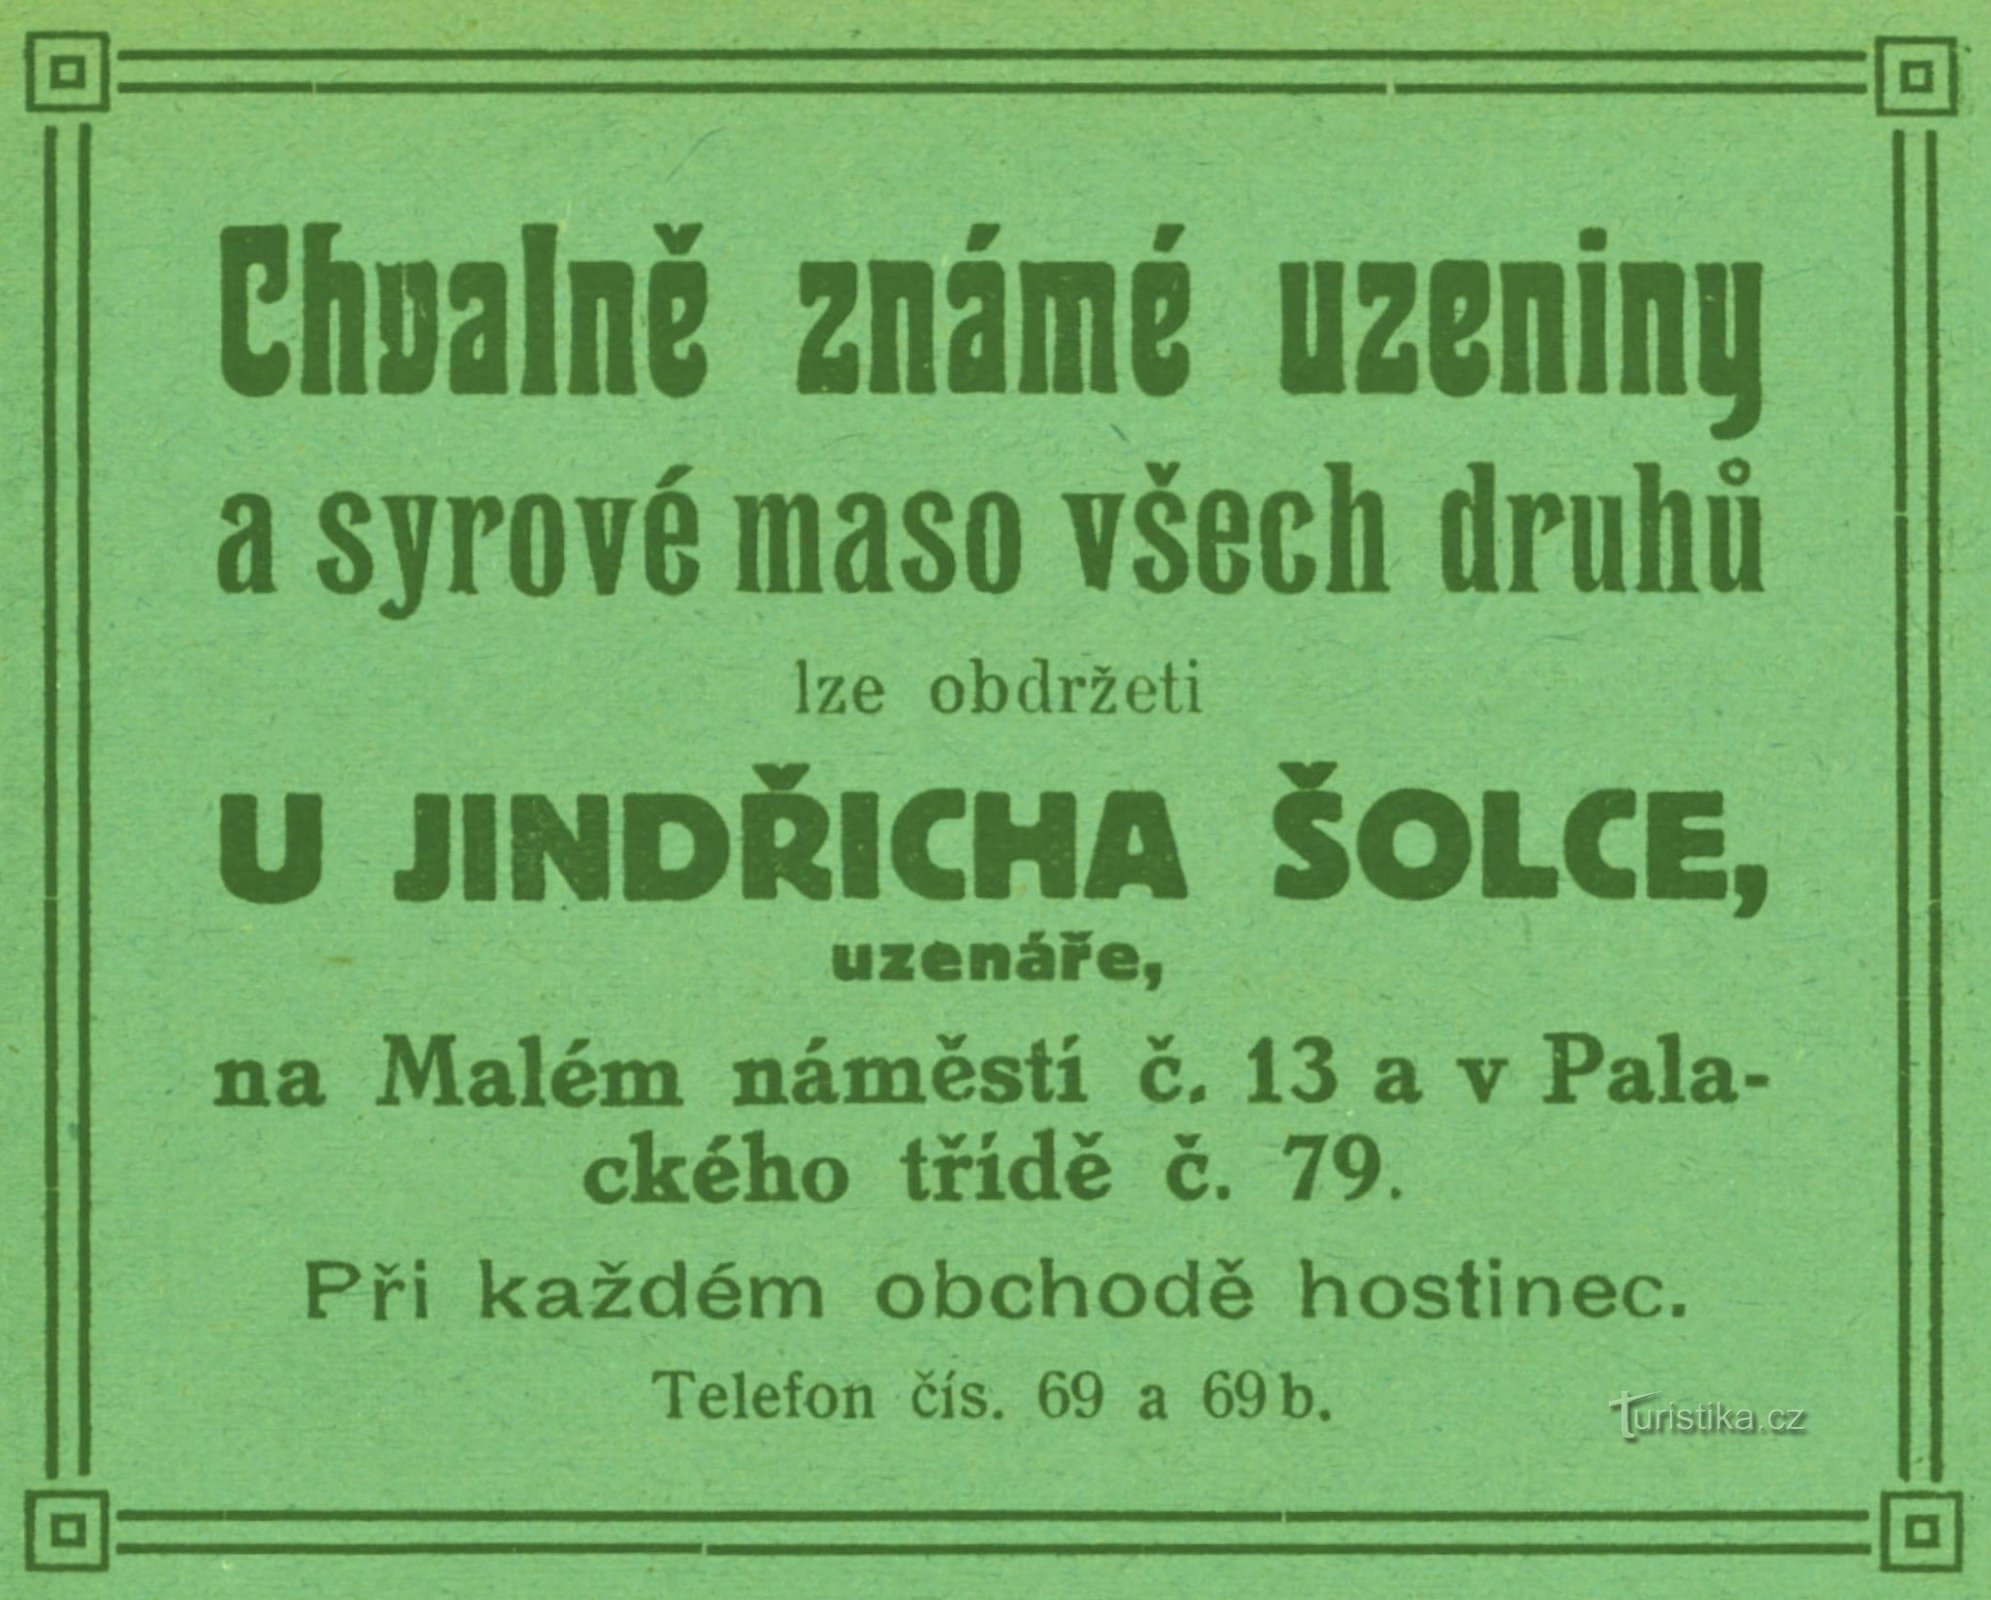 1911 年 Jindřich Šolec 肉店的广告